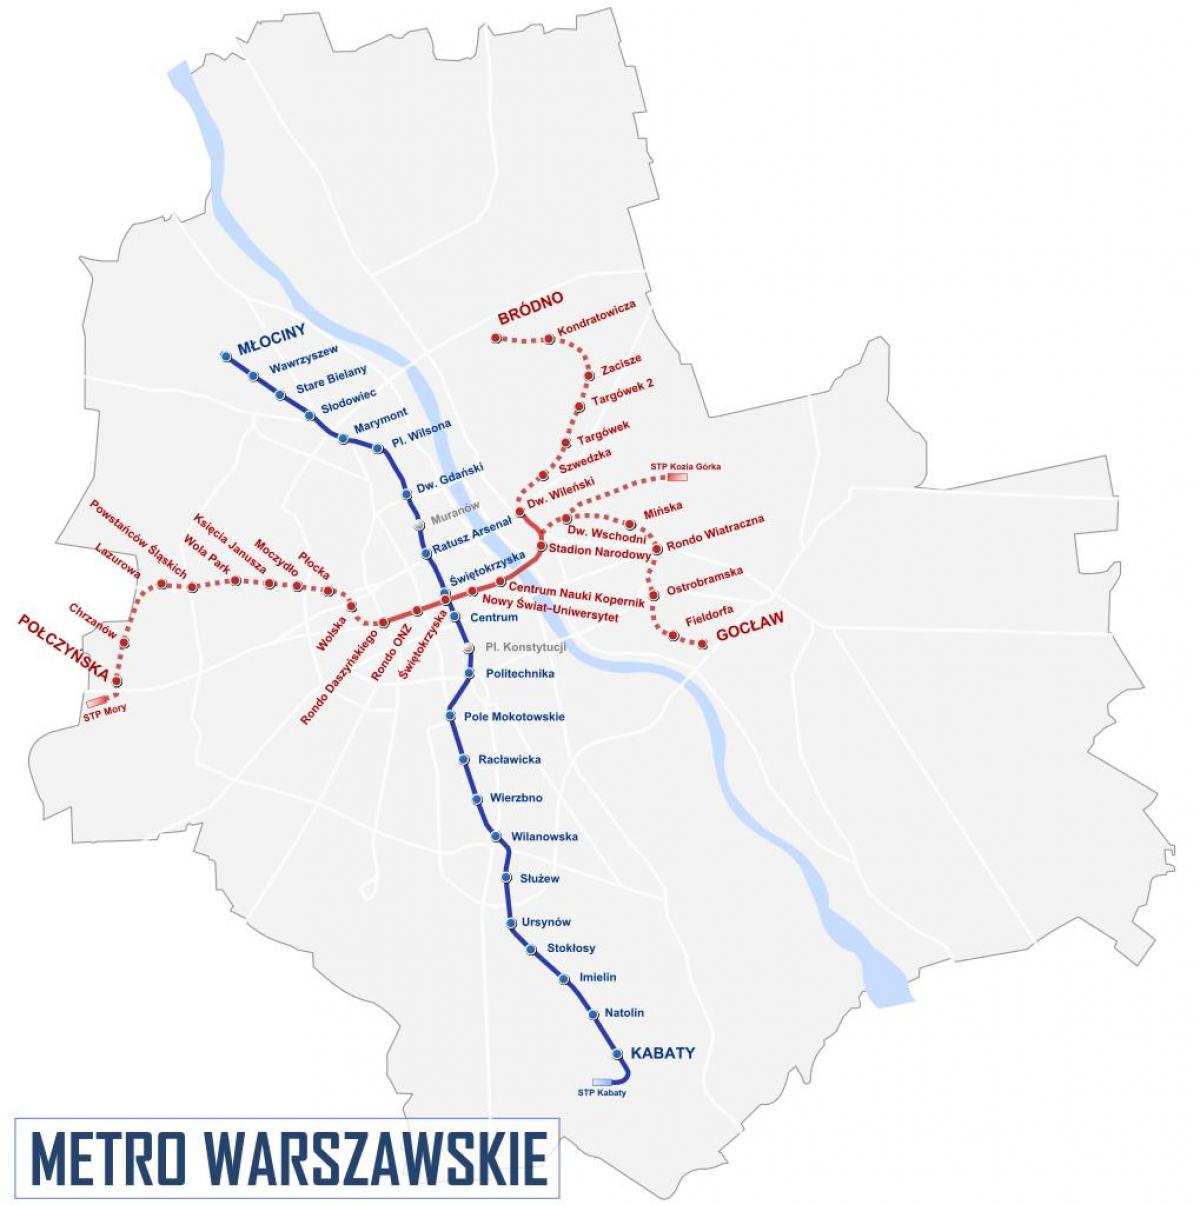 Mapa de Varsovia metro 2016